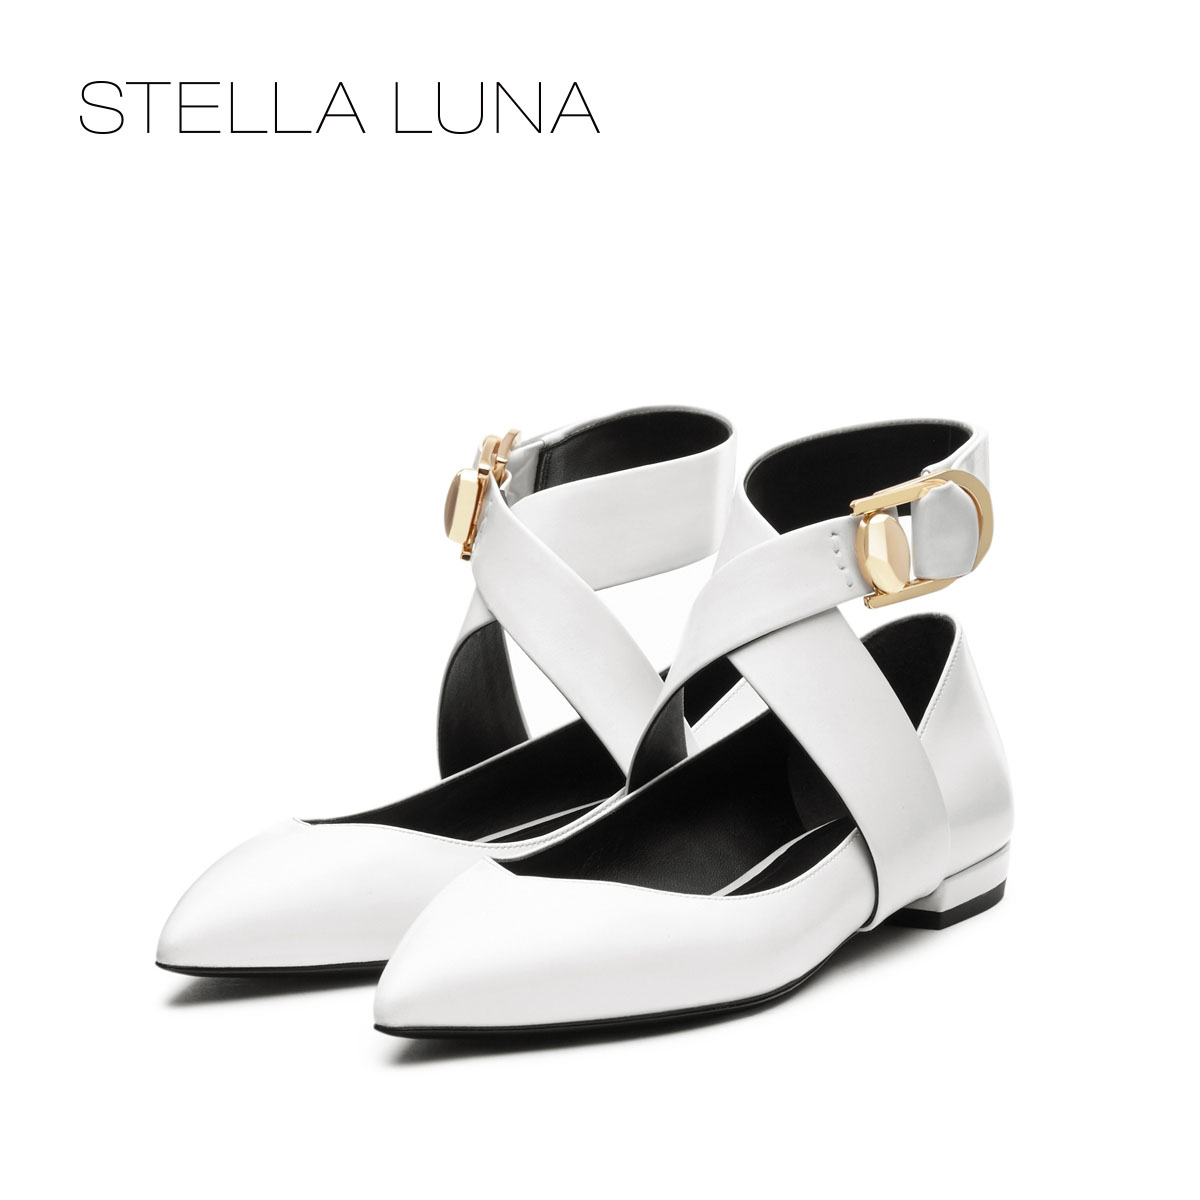 stella luna2017秋季牛皮金属环扣尖头平跟女士单鞋 sh334l24083